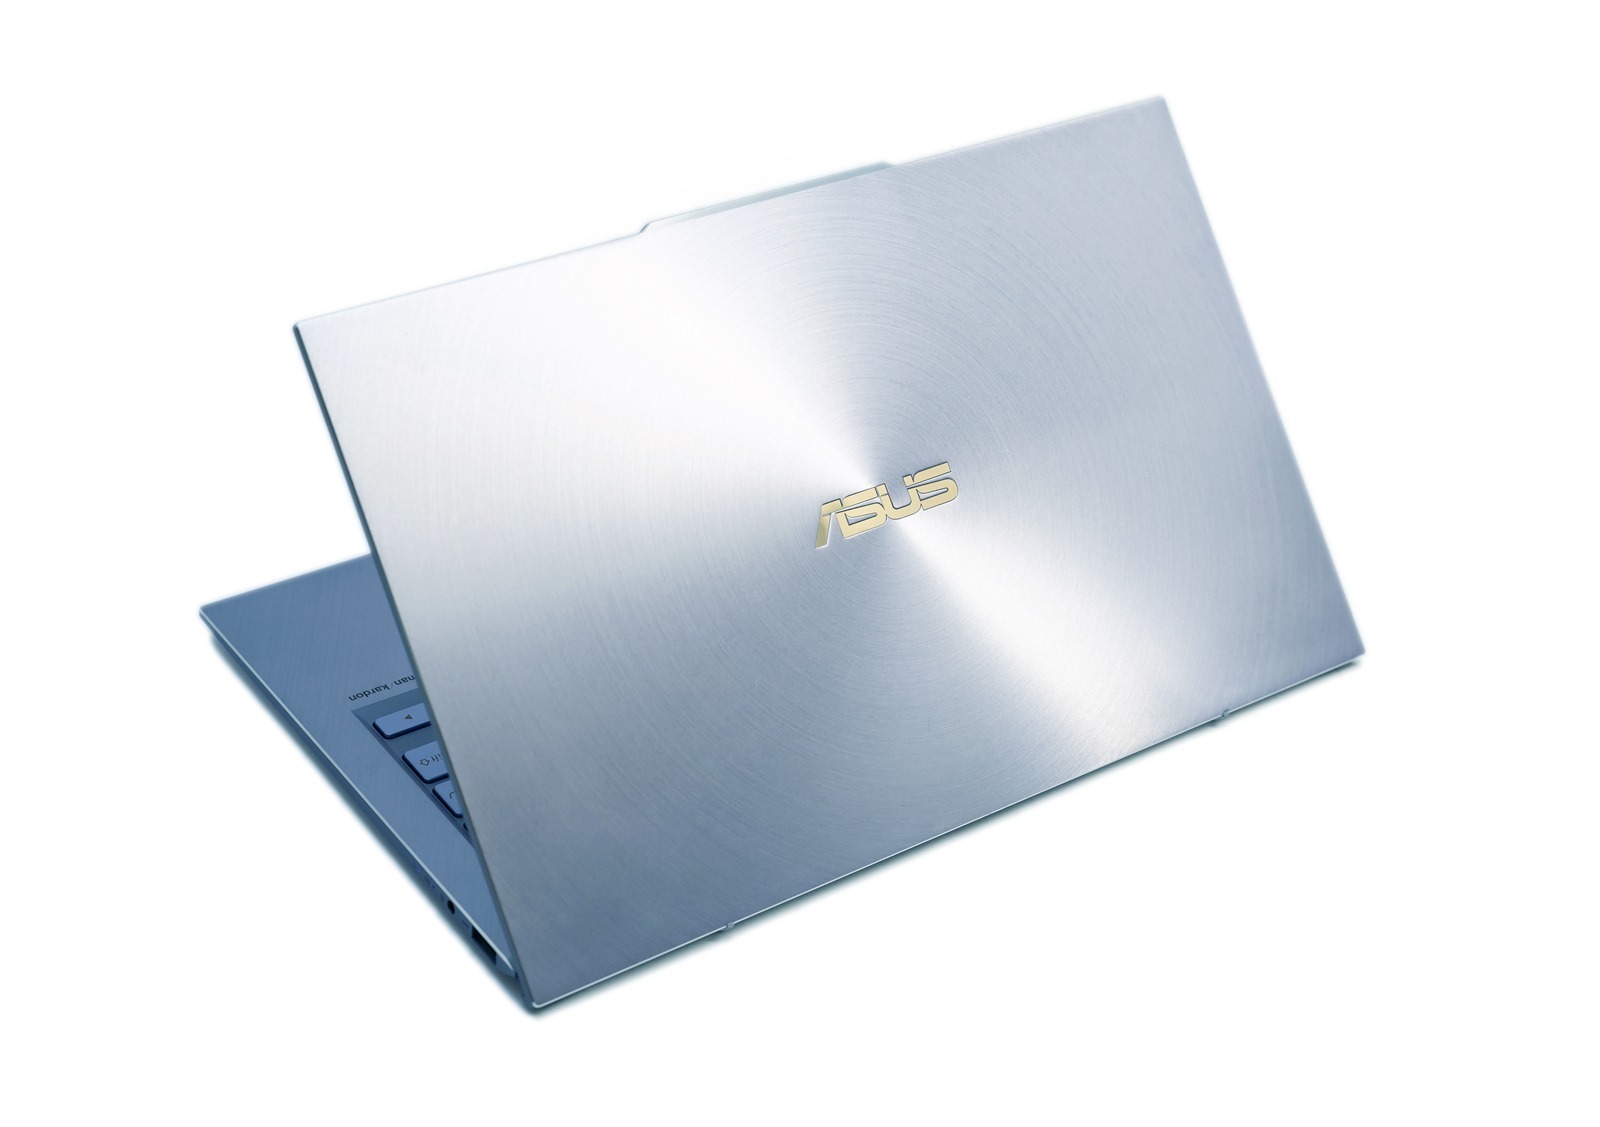 美．力無邊！ASUS ZenBook S13 (UX392) 最輕巧獨顯筆電驚艷世界！ @3C 達人廖阿輝